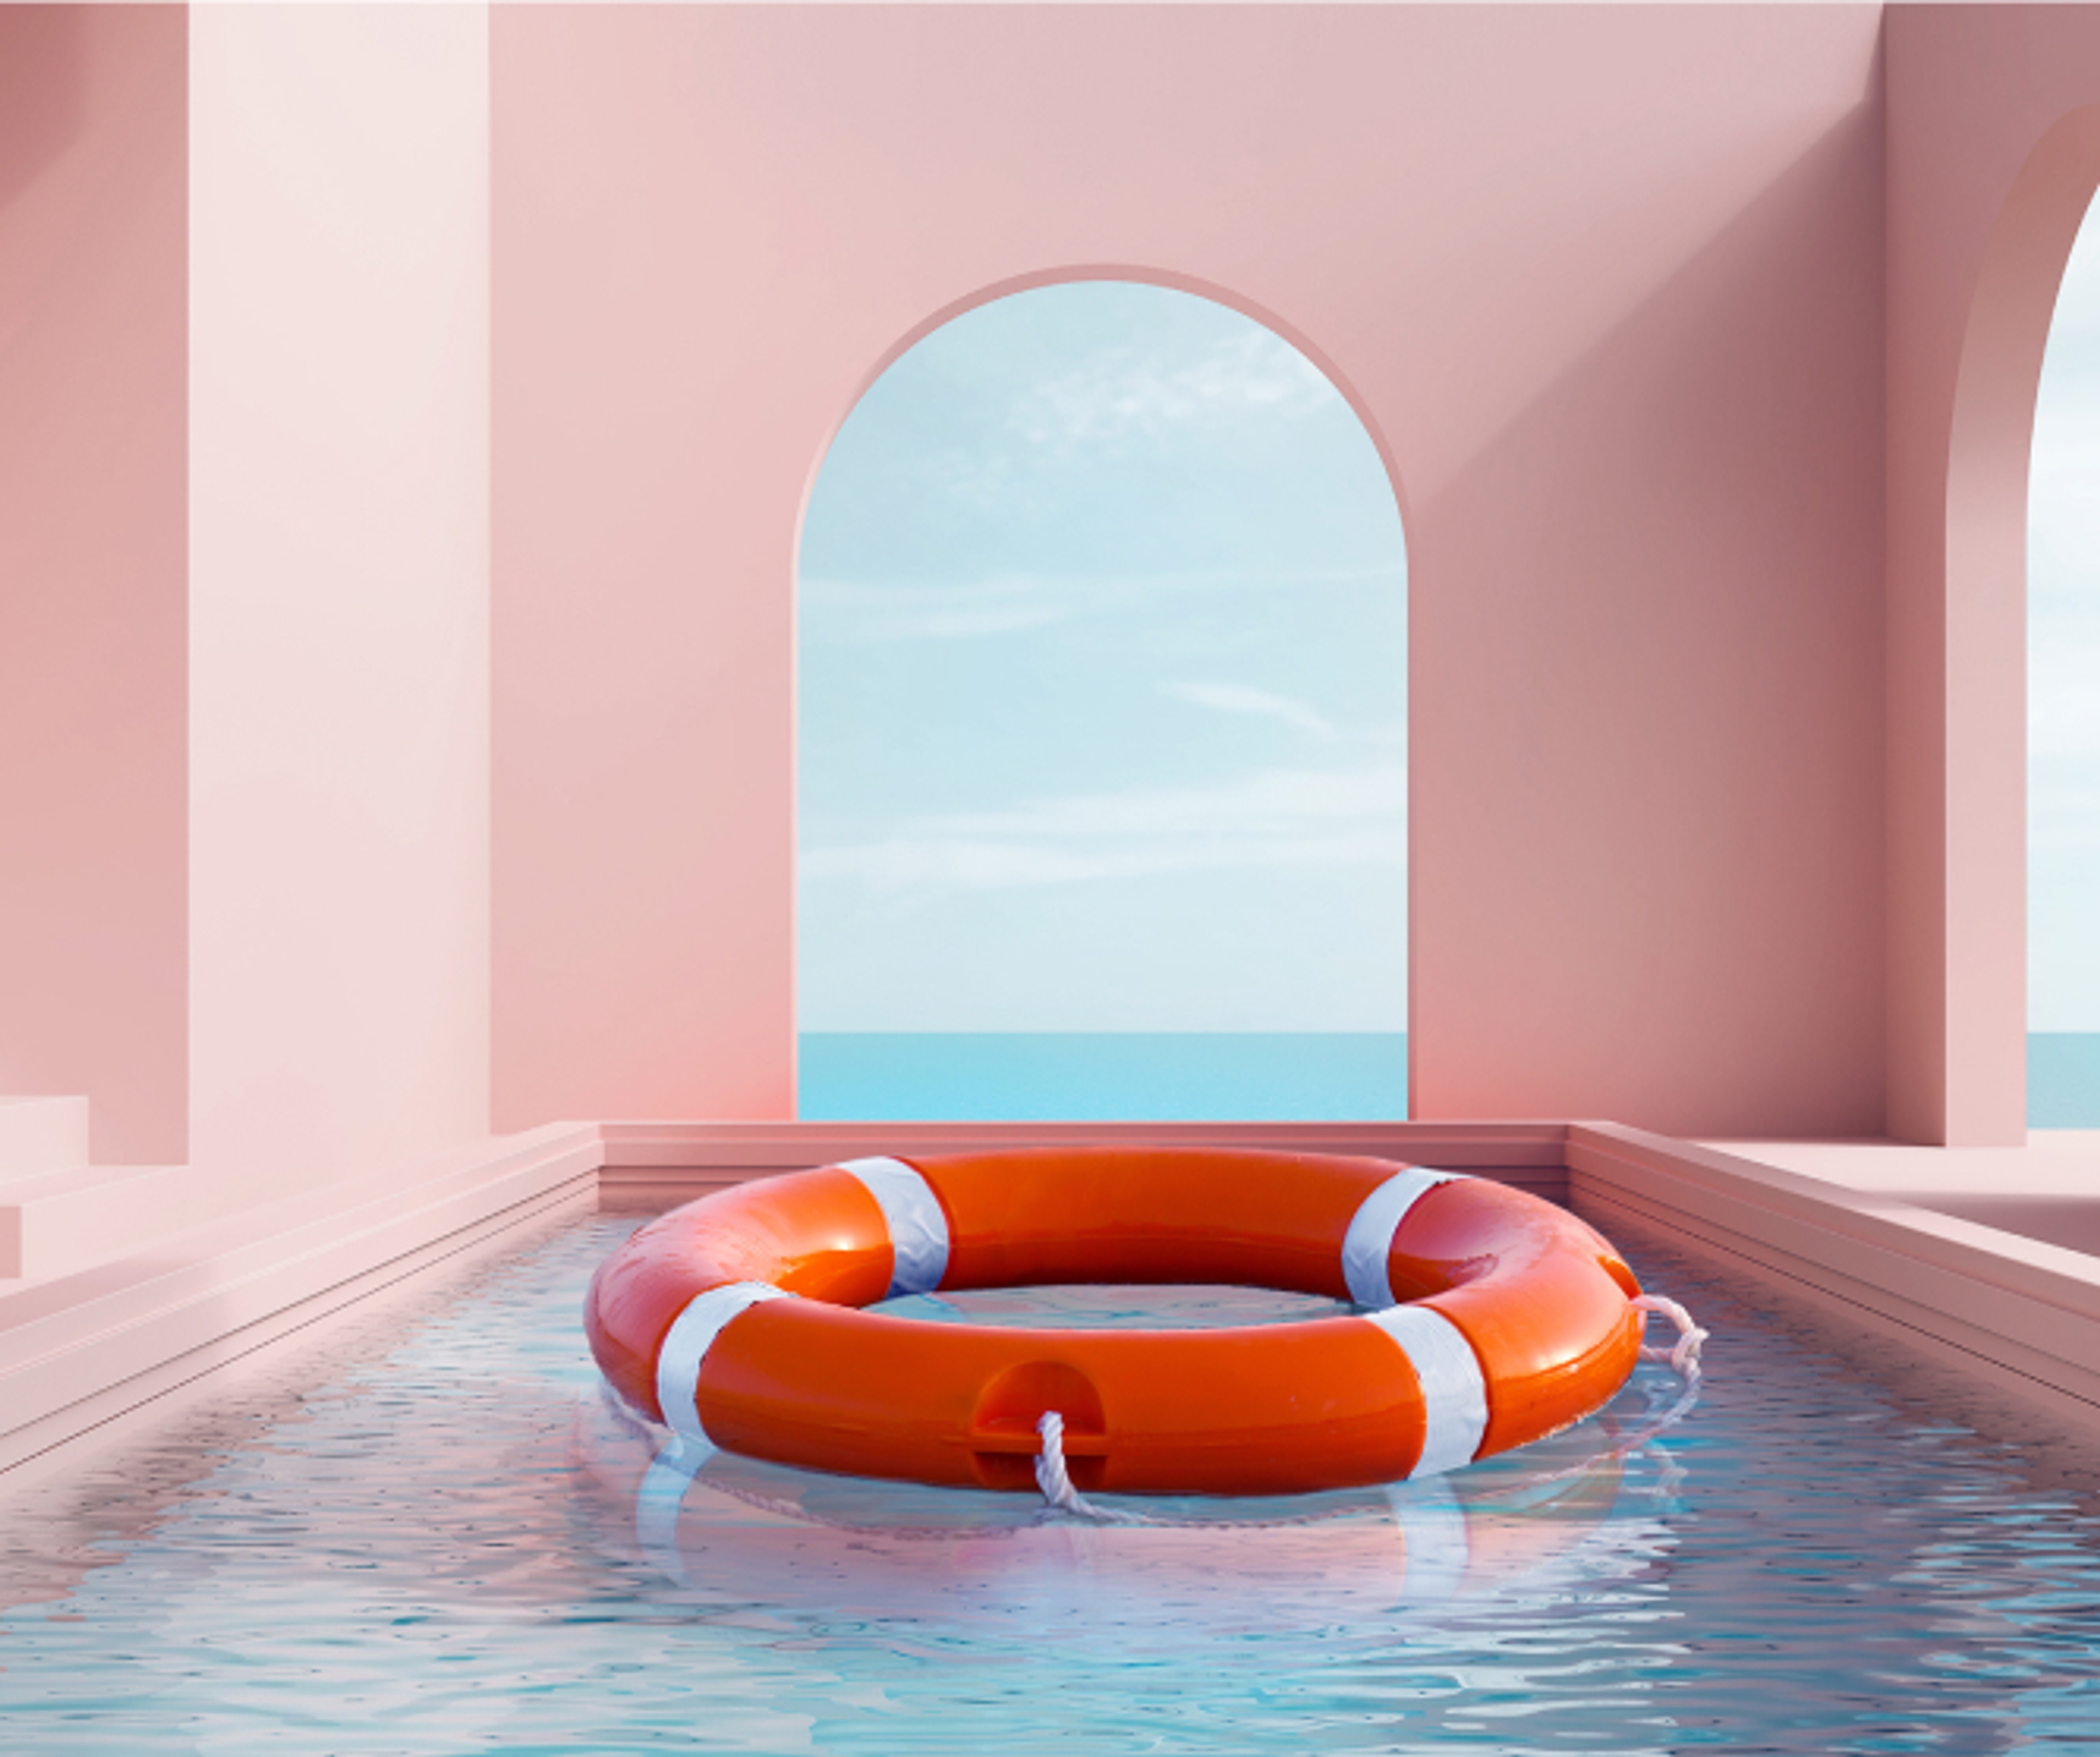 En livbøye som flyter midt i et innendørs basseng. Veggene er rosa og vinduet er buet og rettet ut mot sjøutsikt.